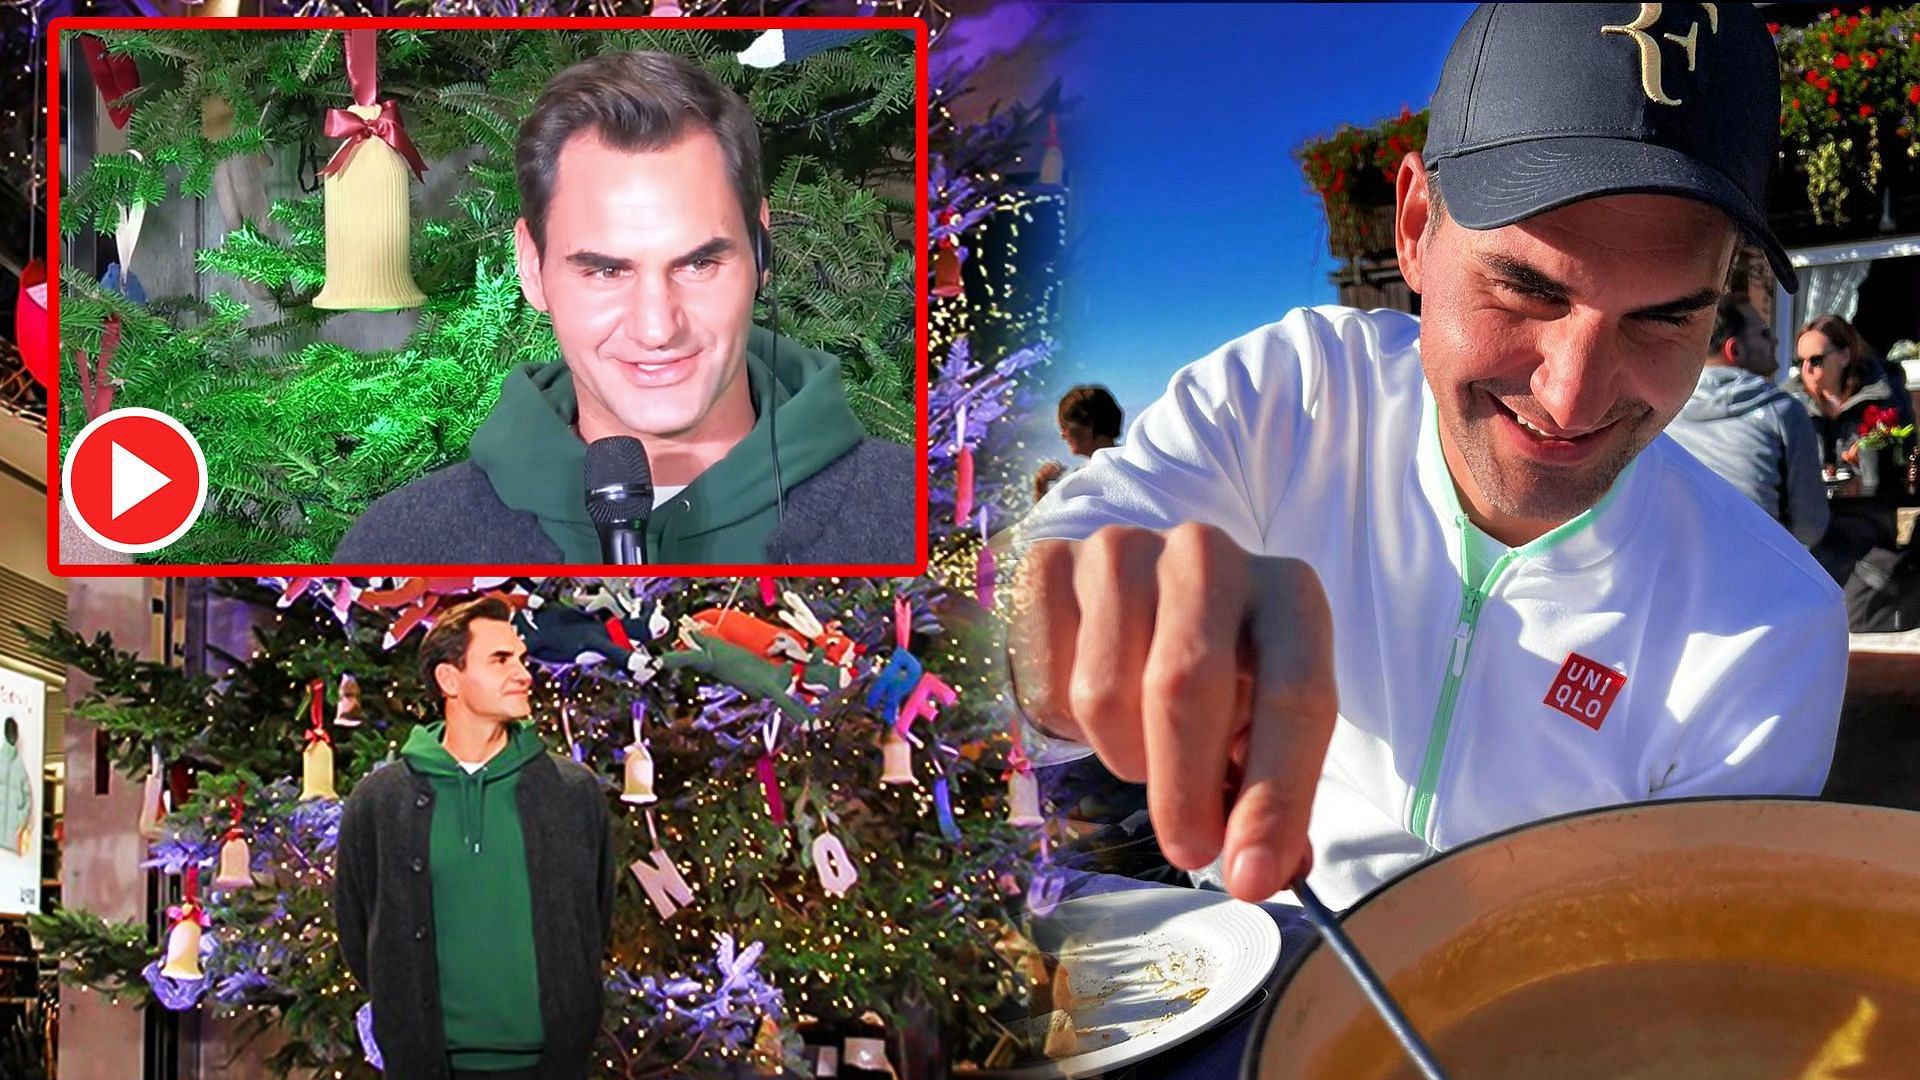 Roger Federer lights the Christmas tree in Japan